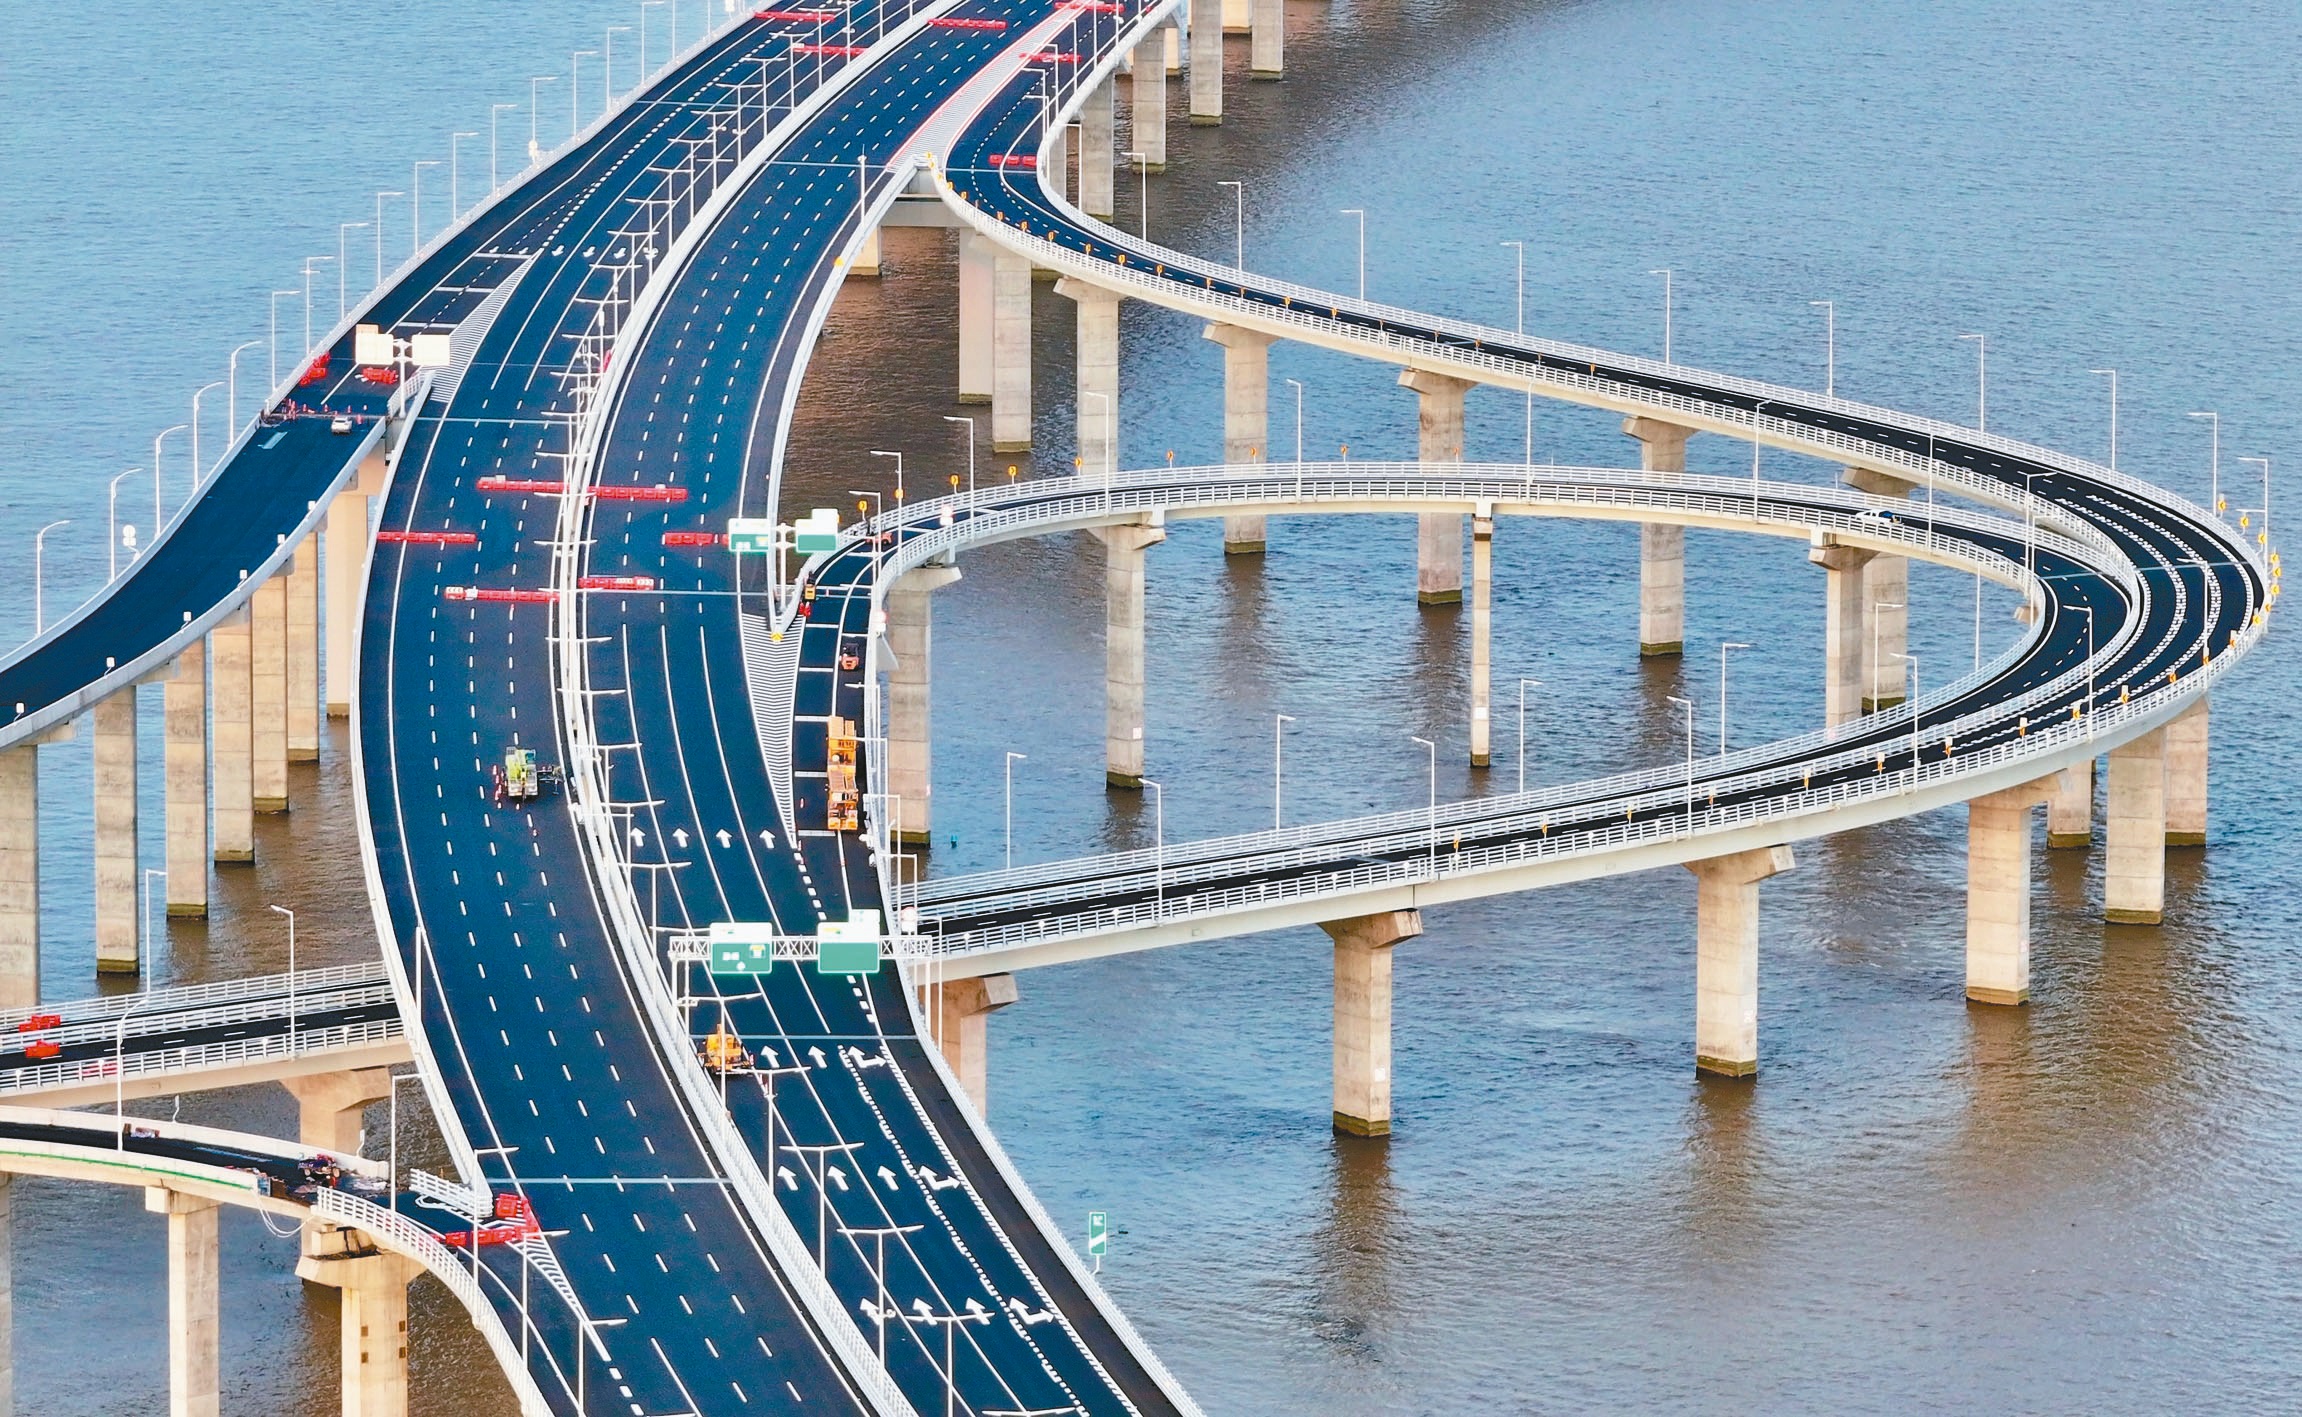 连接珠江口深圳与中山的交通枢纽「深中通道」即将于30日通车试营运，据港媒指出将有大陆国家领导人出席。（中新社）